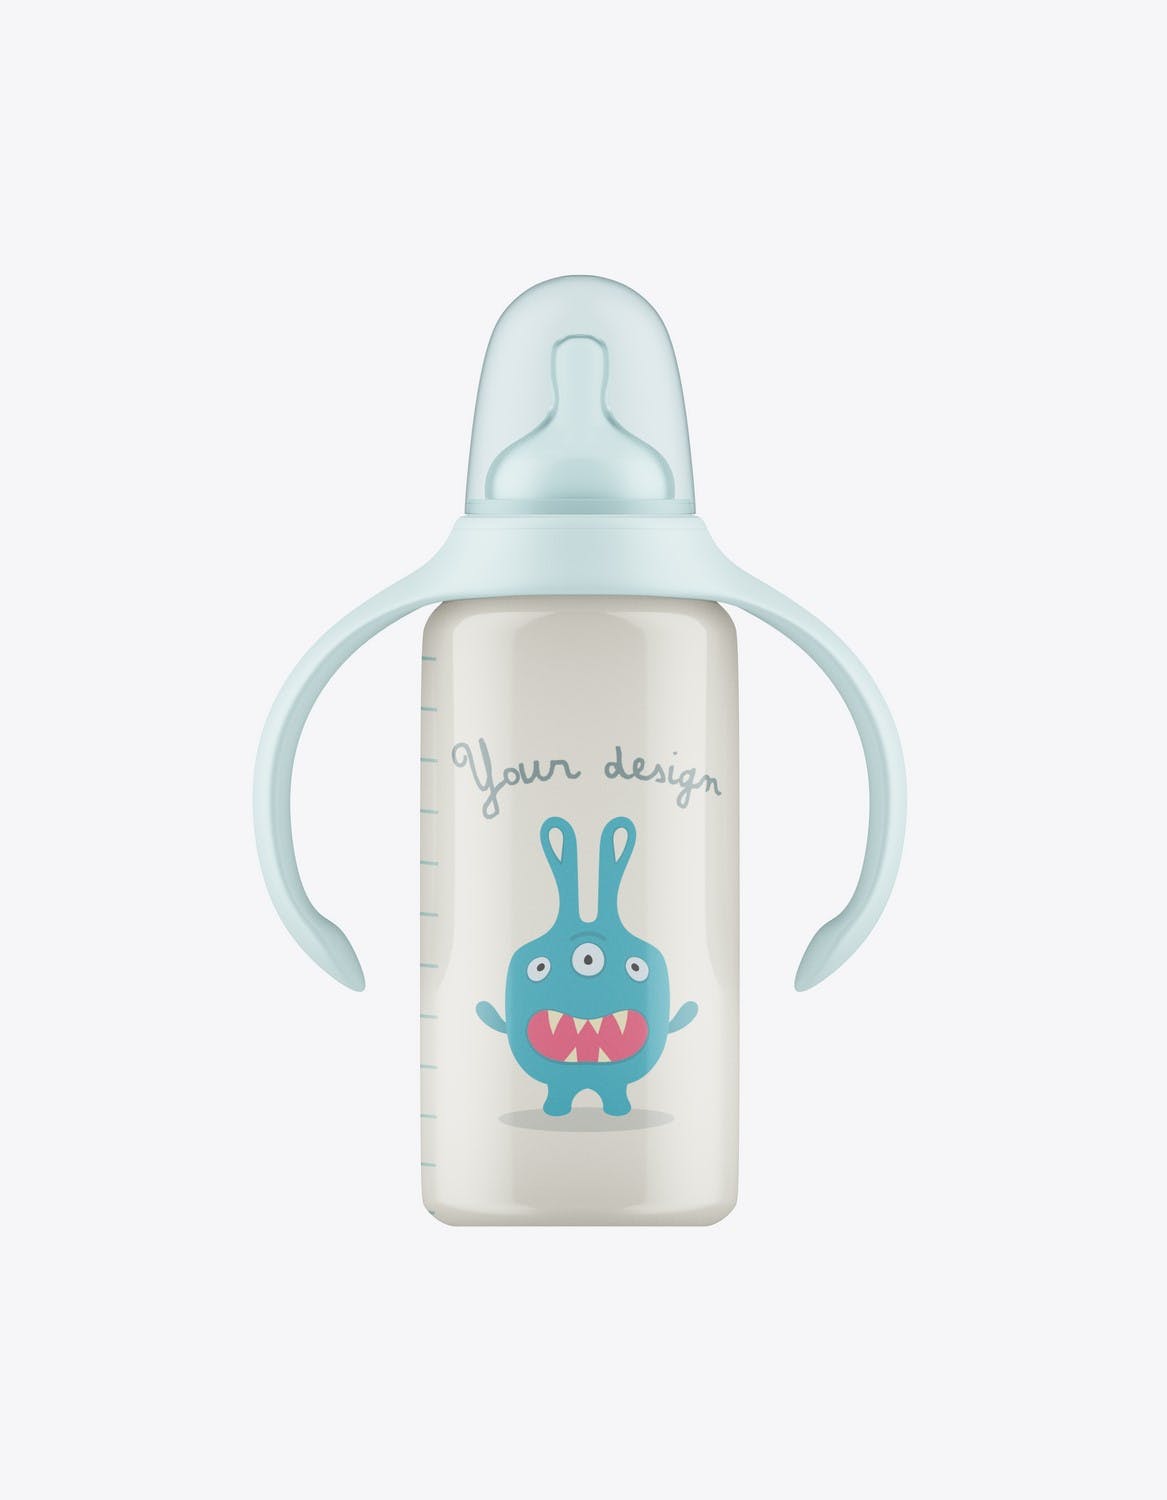 带把手的婴儿奶瓶包装设计样机 Baby Bottle with Handles Mockup 样机素材 第10张